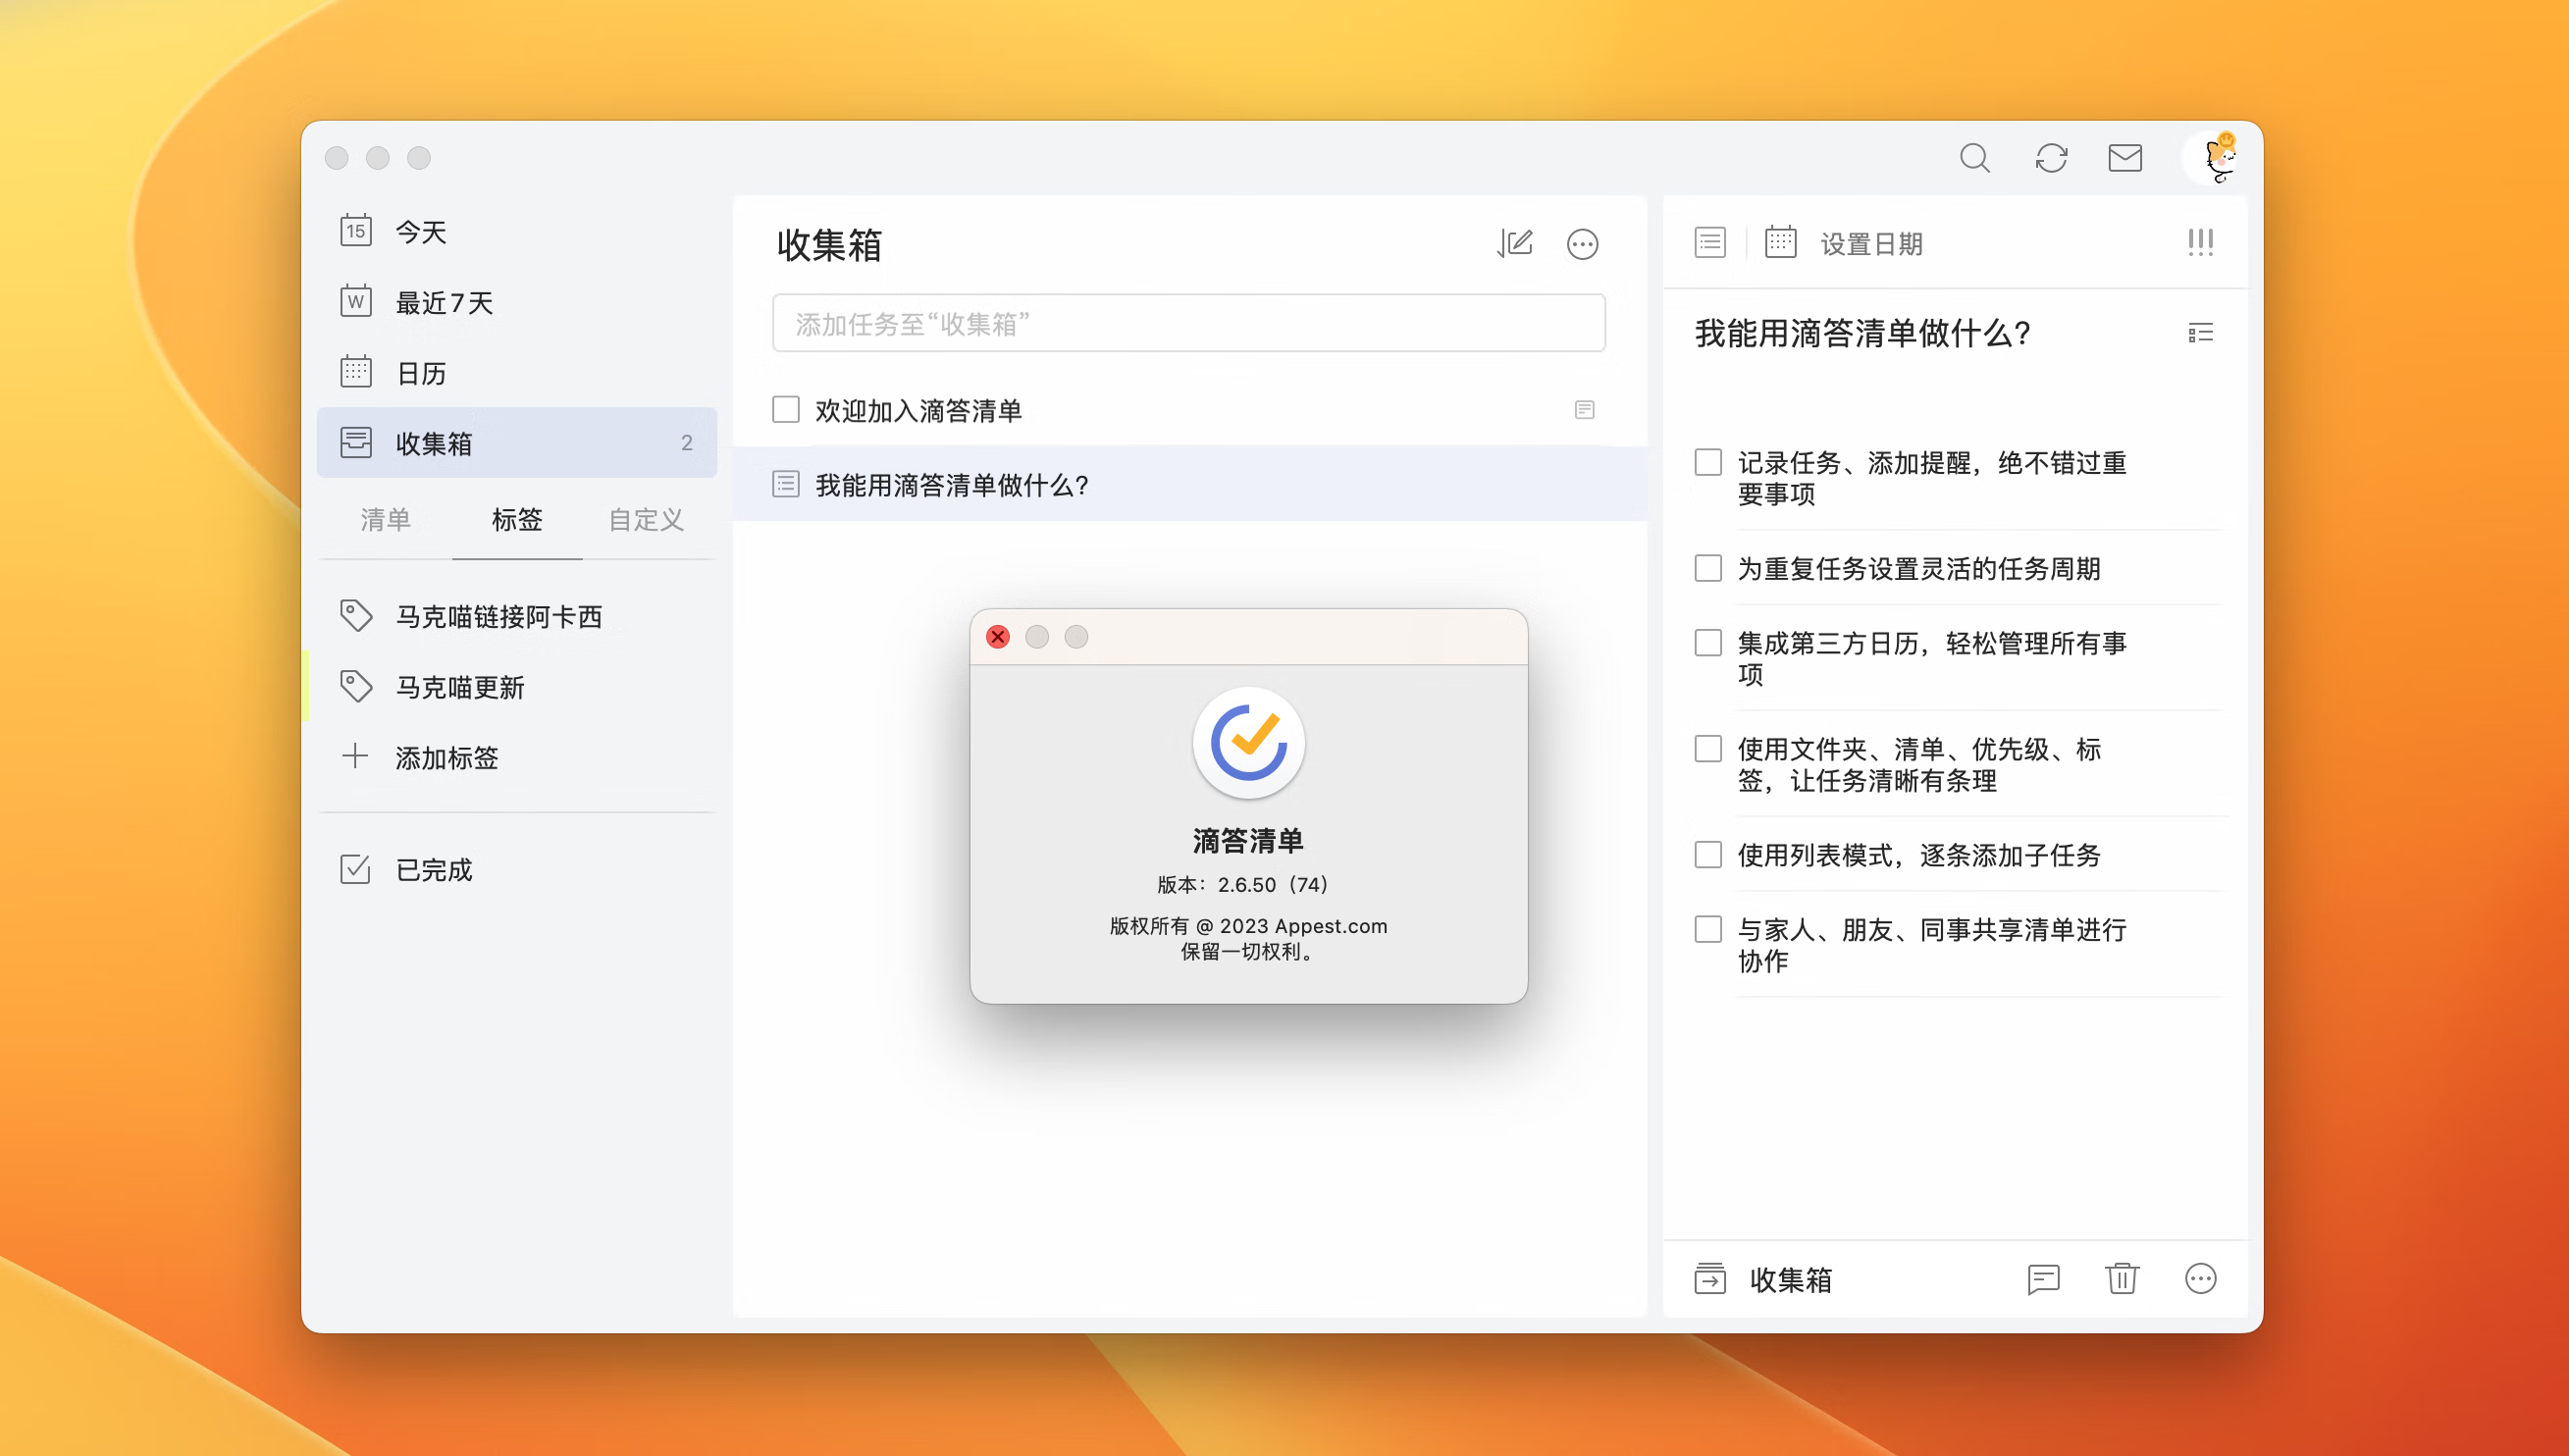 滴答清单ickTick for Mac v2.6.50(74) 中文破解版 待办事项提醒应用